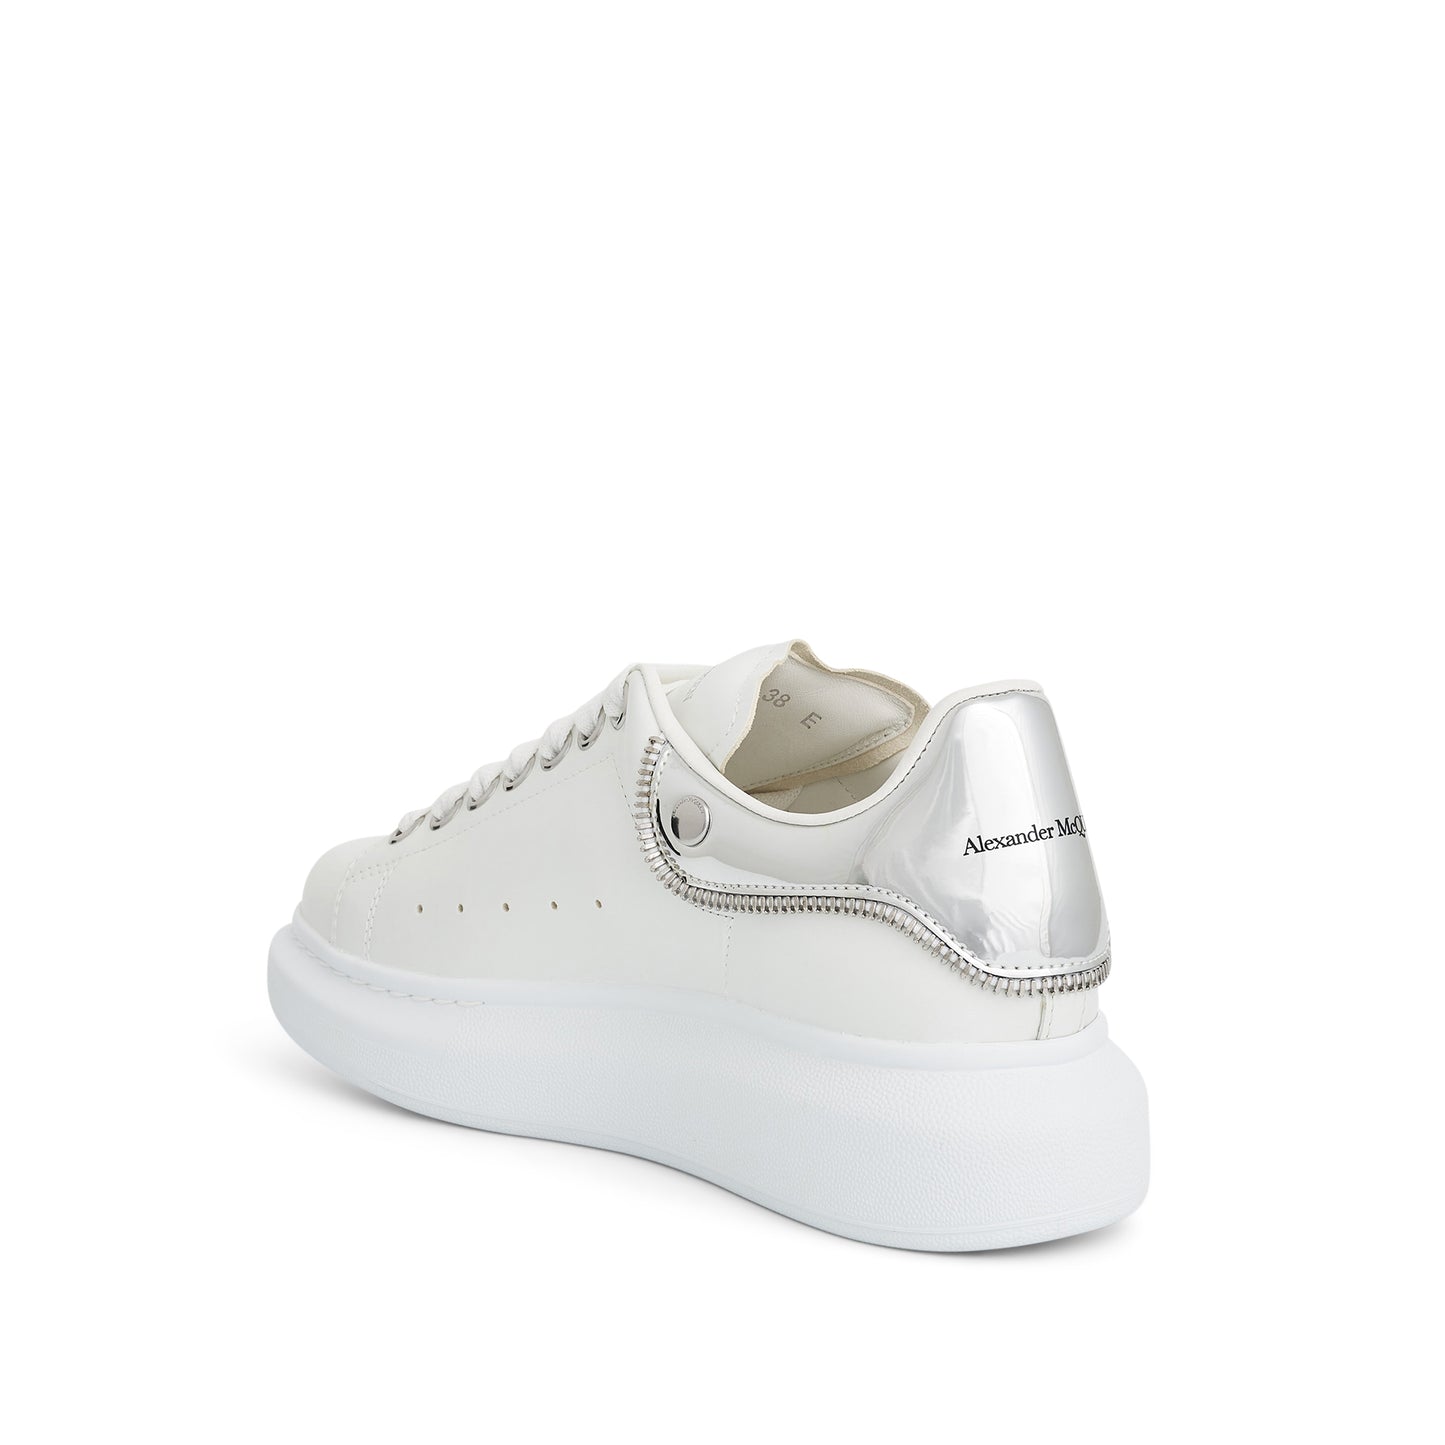 Larry Oversized Mirror Sneaker in White/Silver